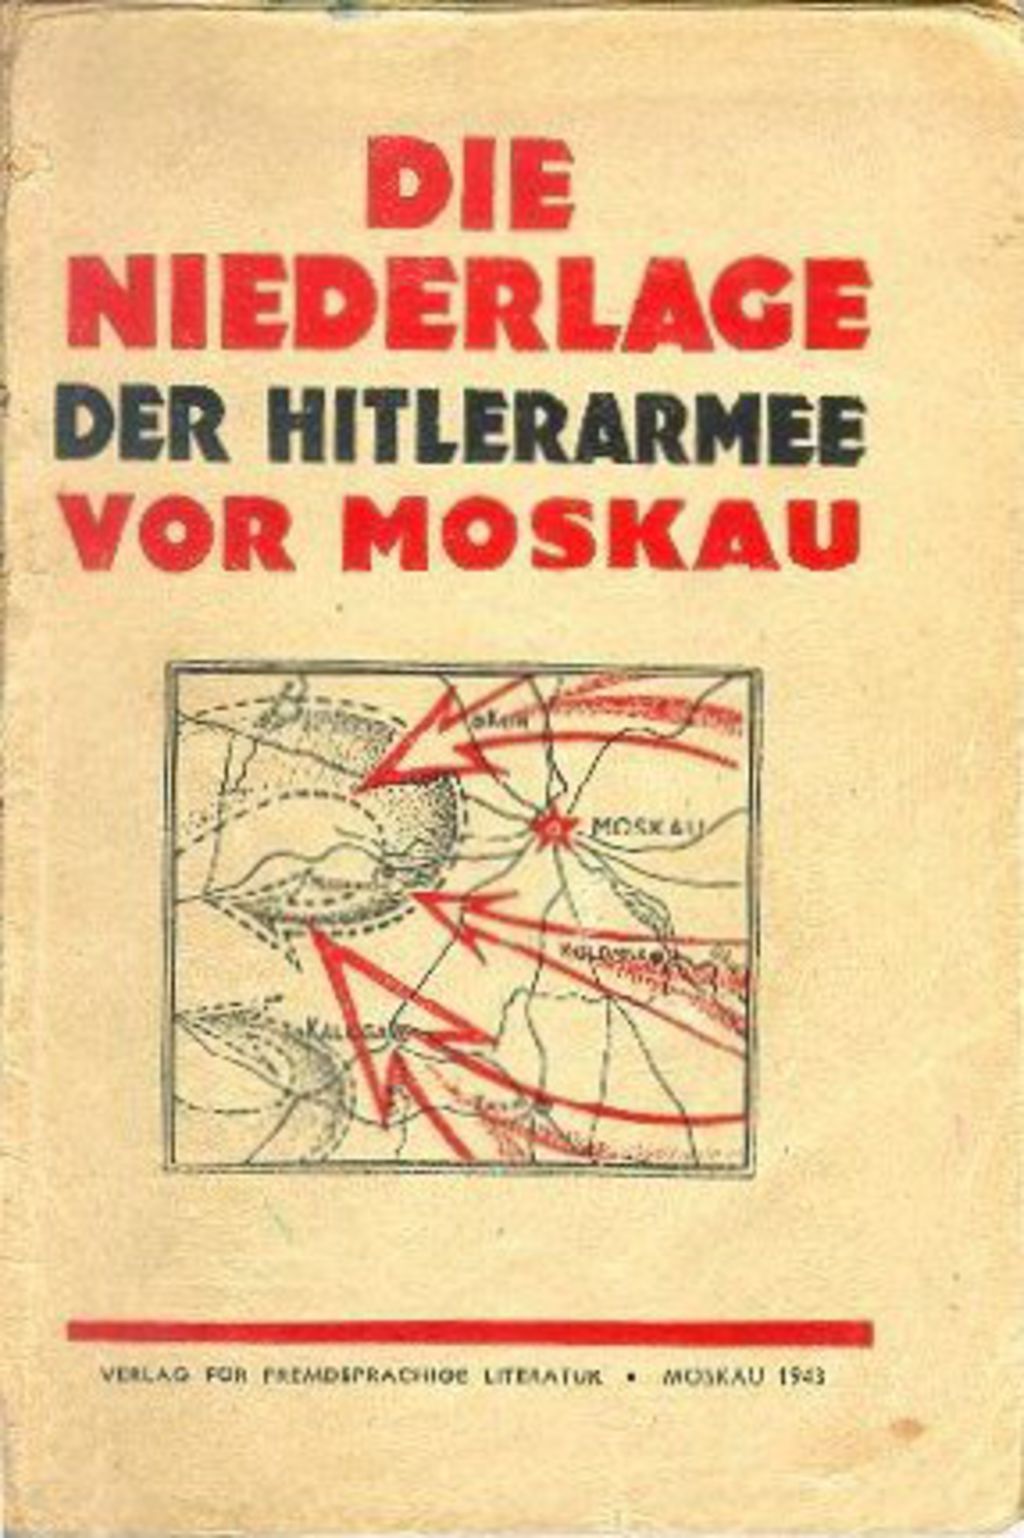 Exponat: Broschüre: "Niederlage der Hitlerarmee vor Moskau", 1943